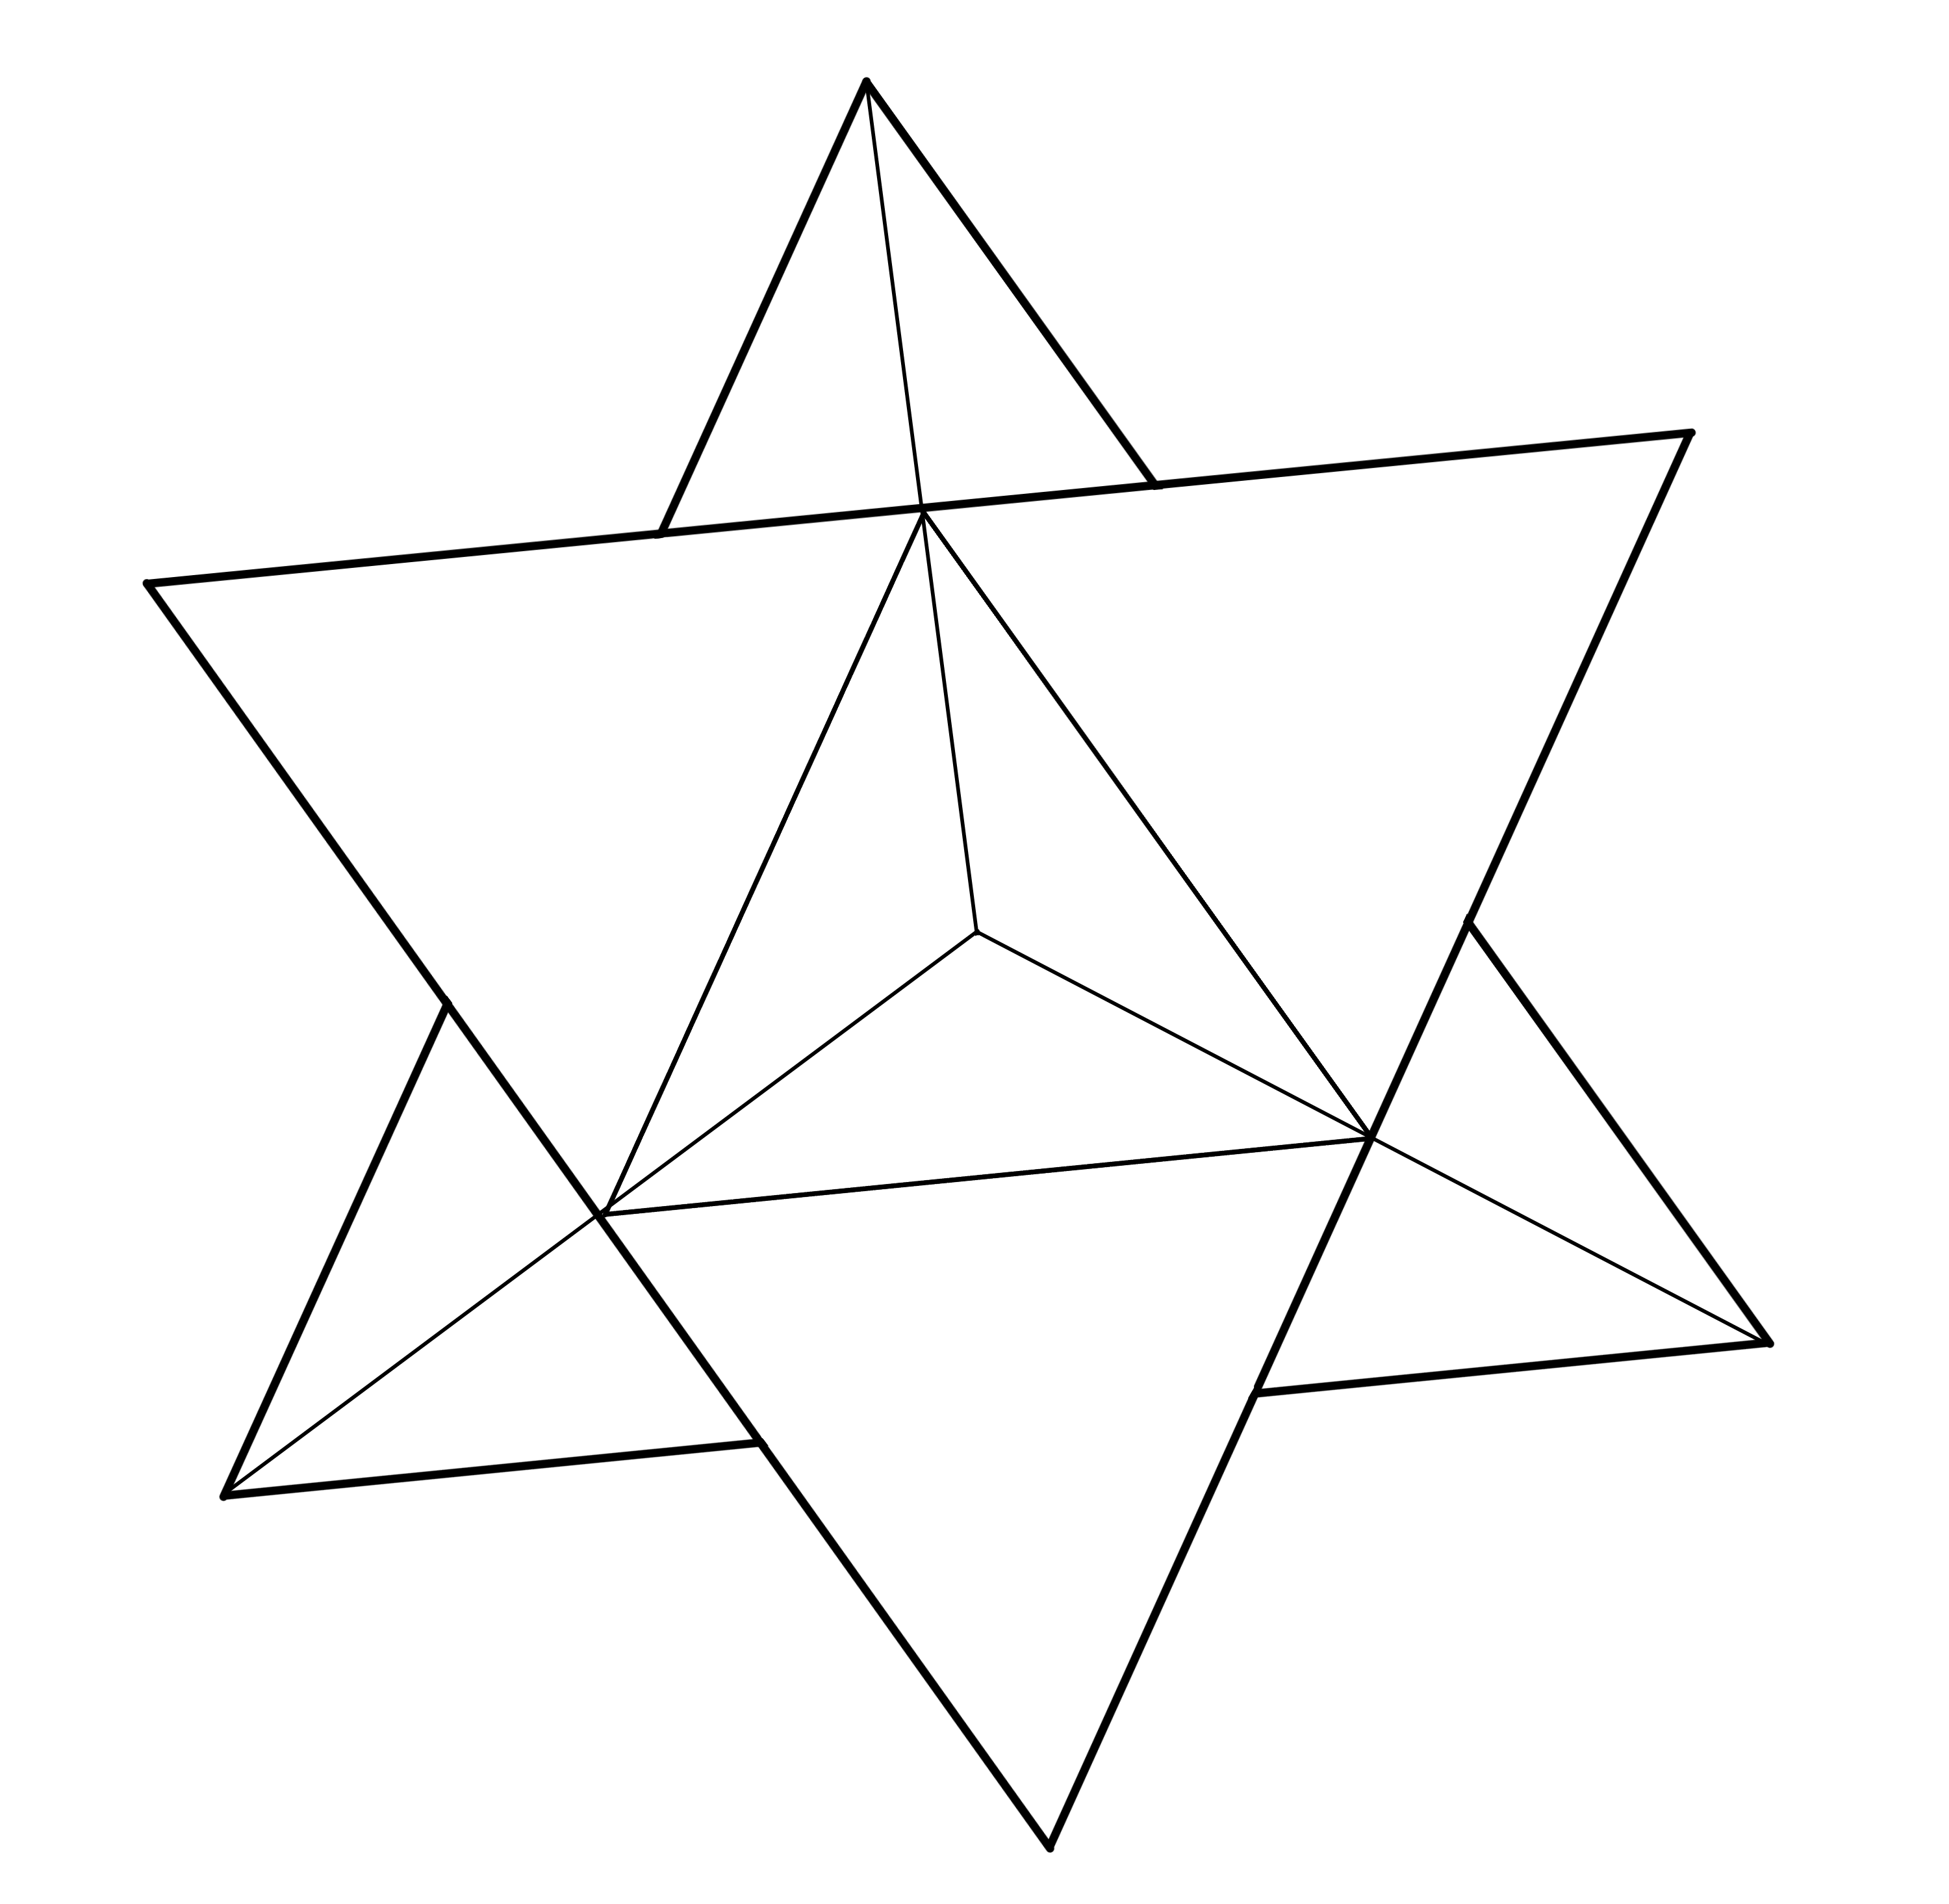 図形を描いてみる 三角形と星 Medibang Paint 無料のイラスト マンガ制作ツール